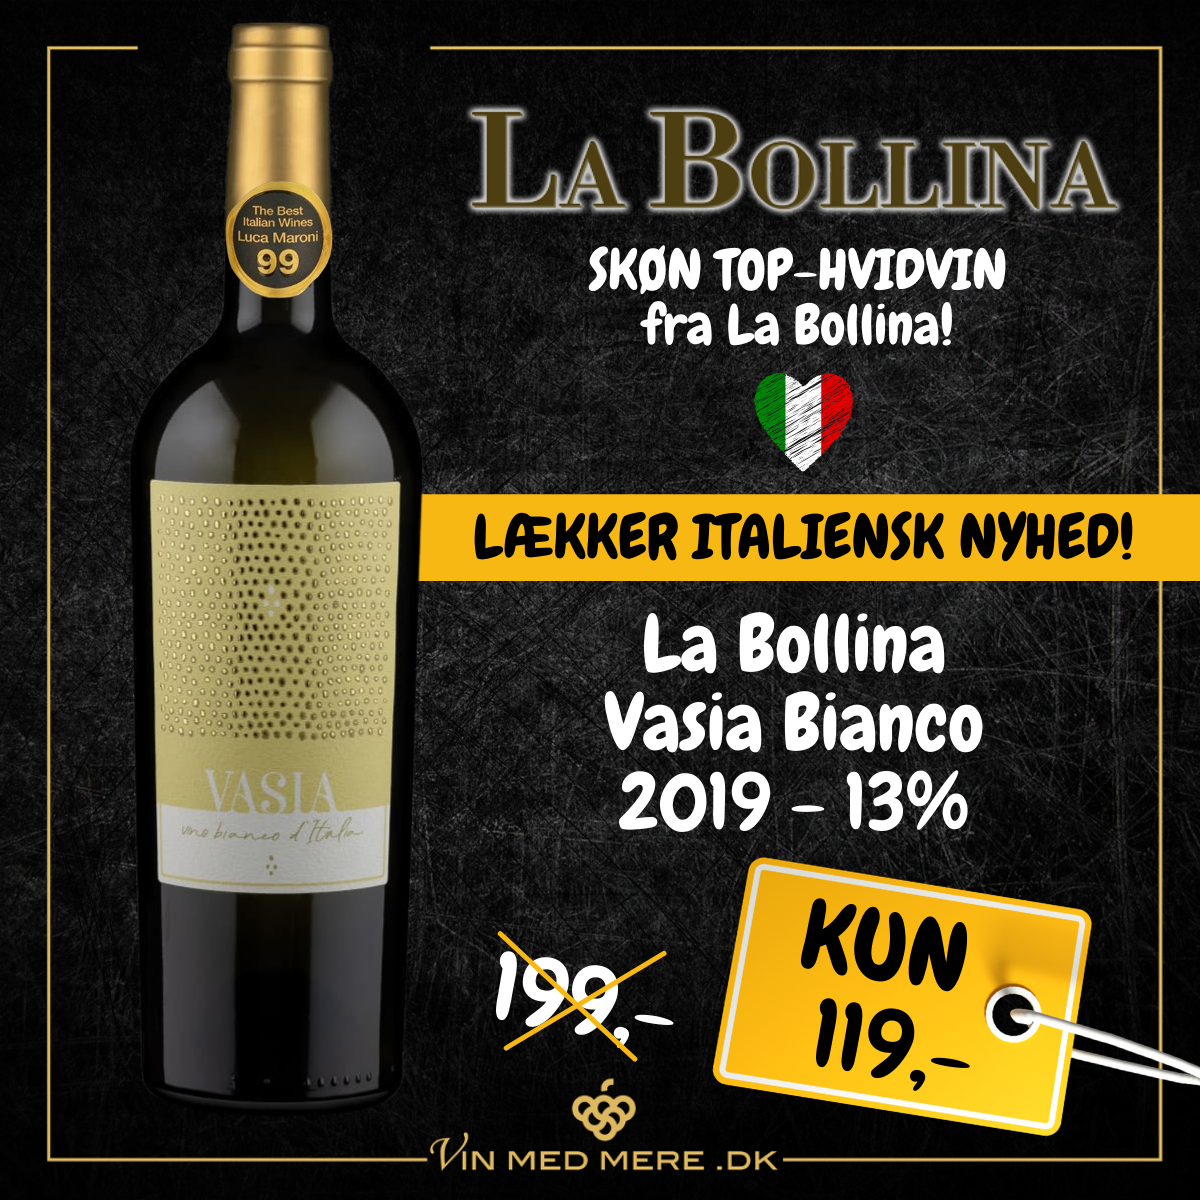 La Bollina Vasia Bianco 2019 - 13% - ITALIENSK HVIDVIN - VIN MED .DK